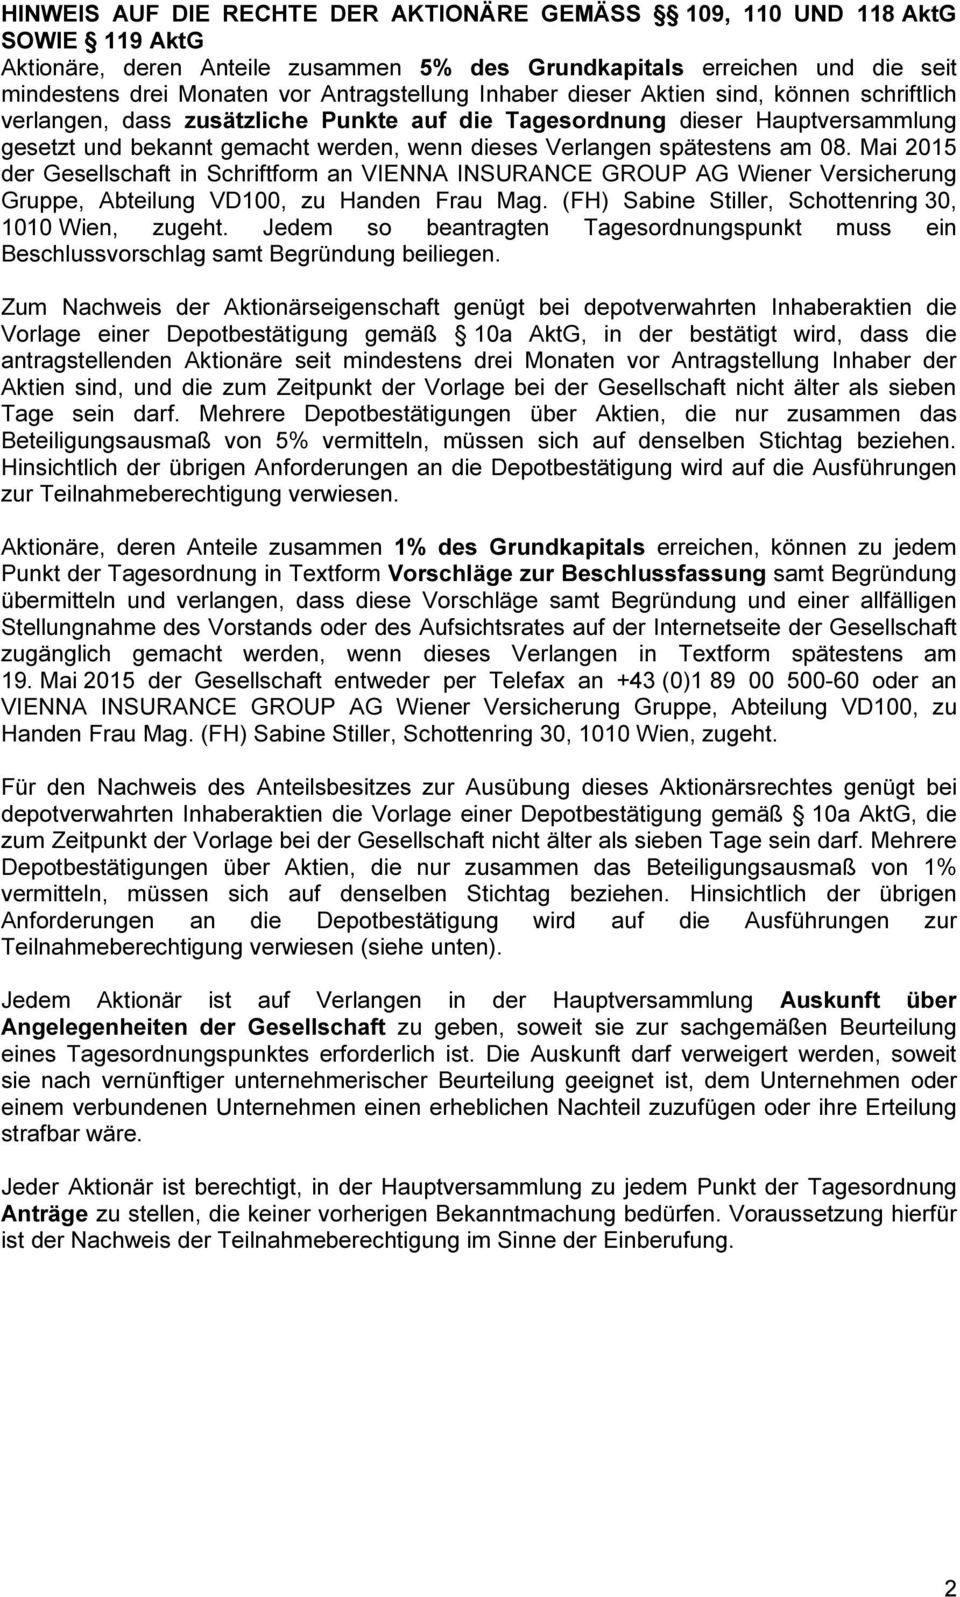 spätestens am 08. Mai 2015 der Gesellschaft in Schriftform an VIENNA INSURANCE GROUP AG Wiener Versicherung Gruppe, Abteilung VD100, zu Handen Frau Mag.